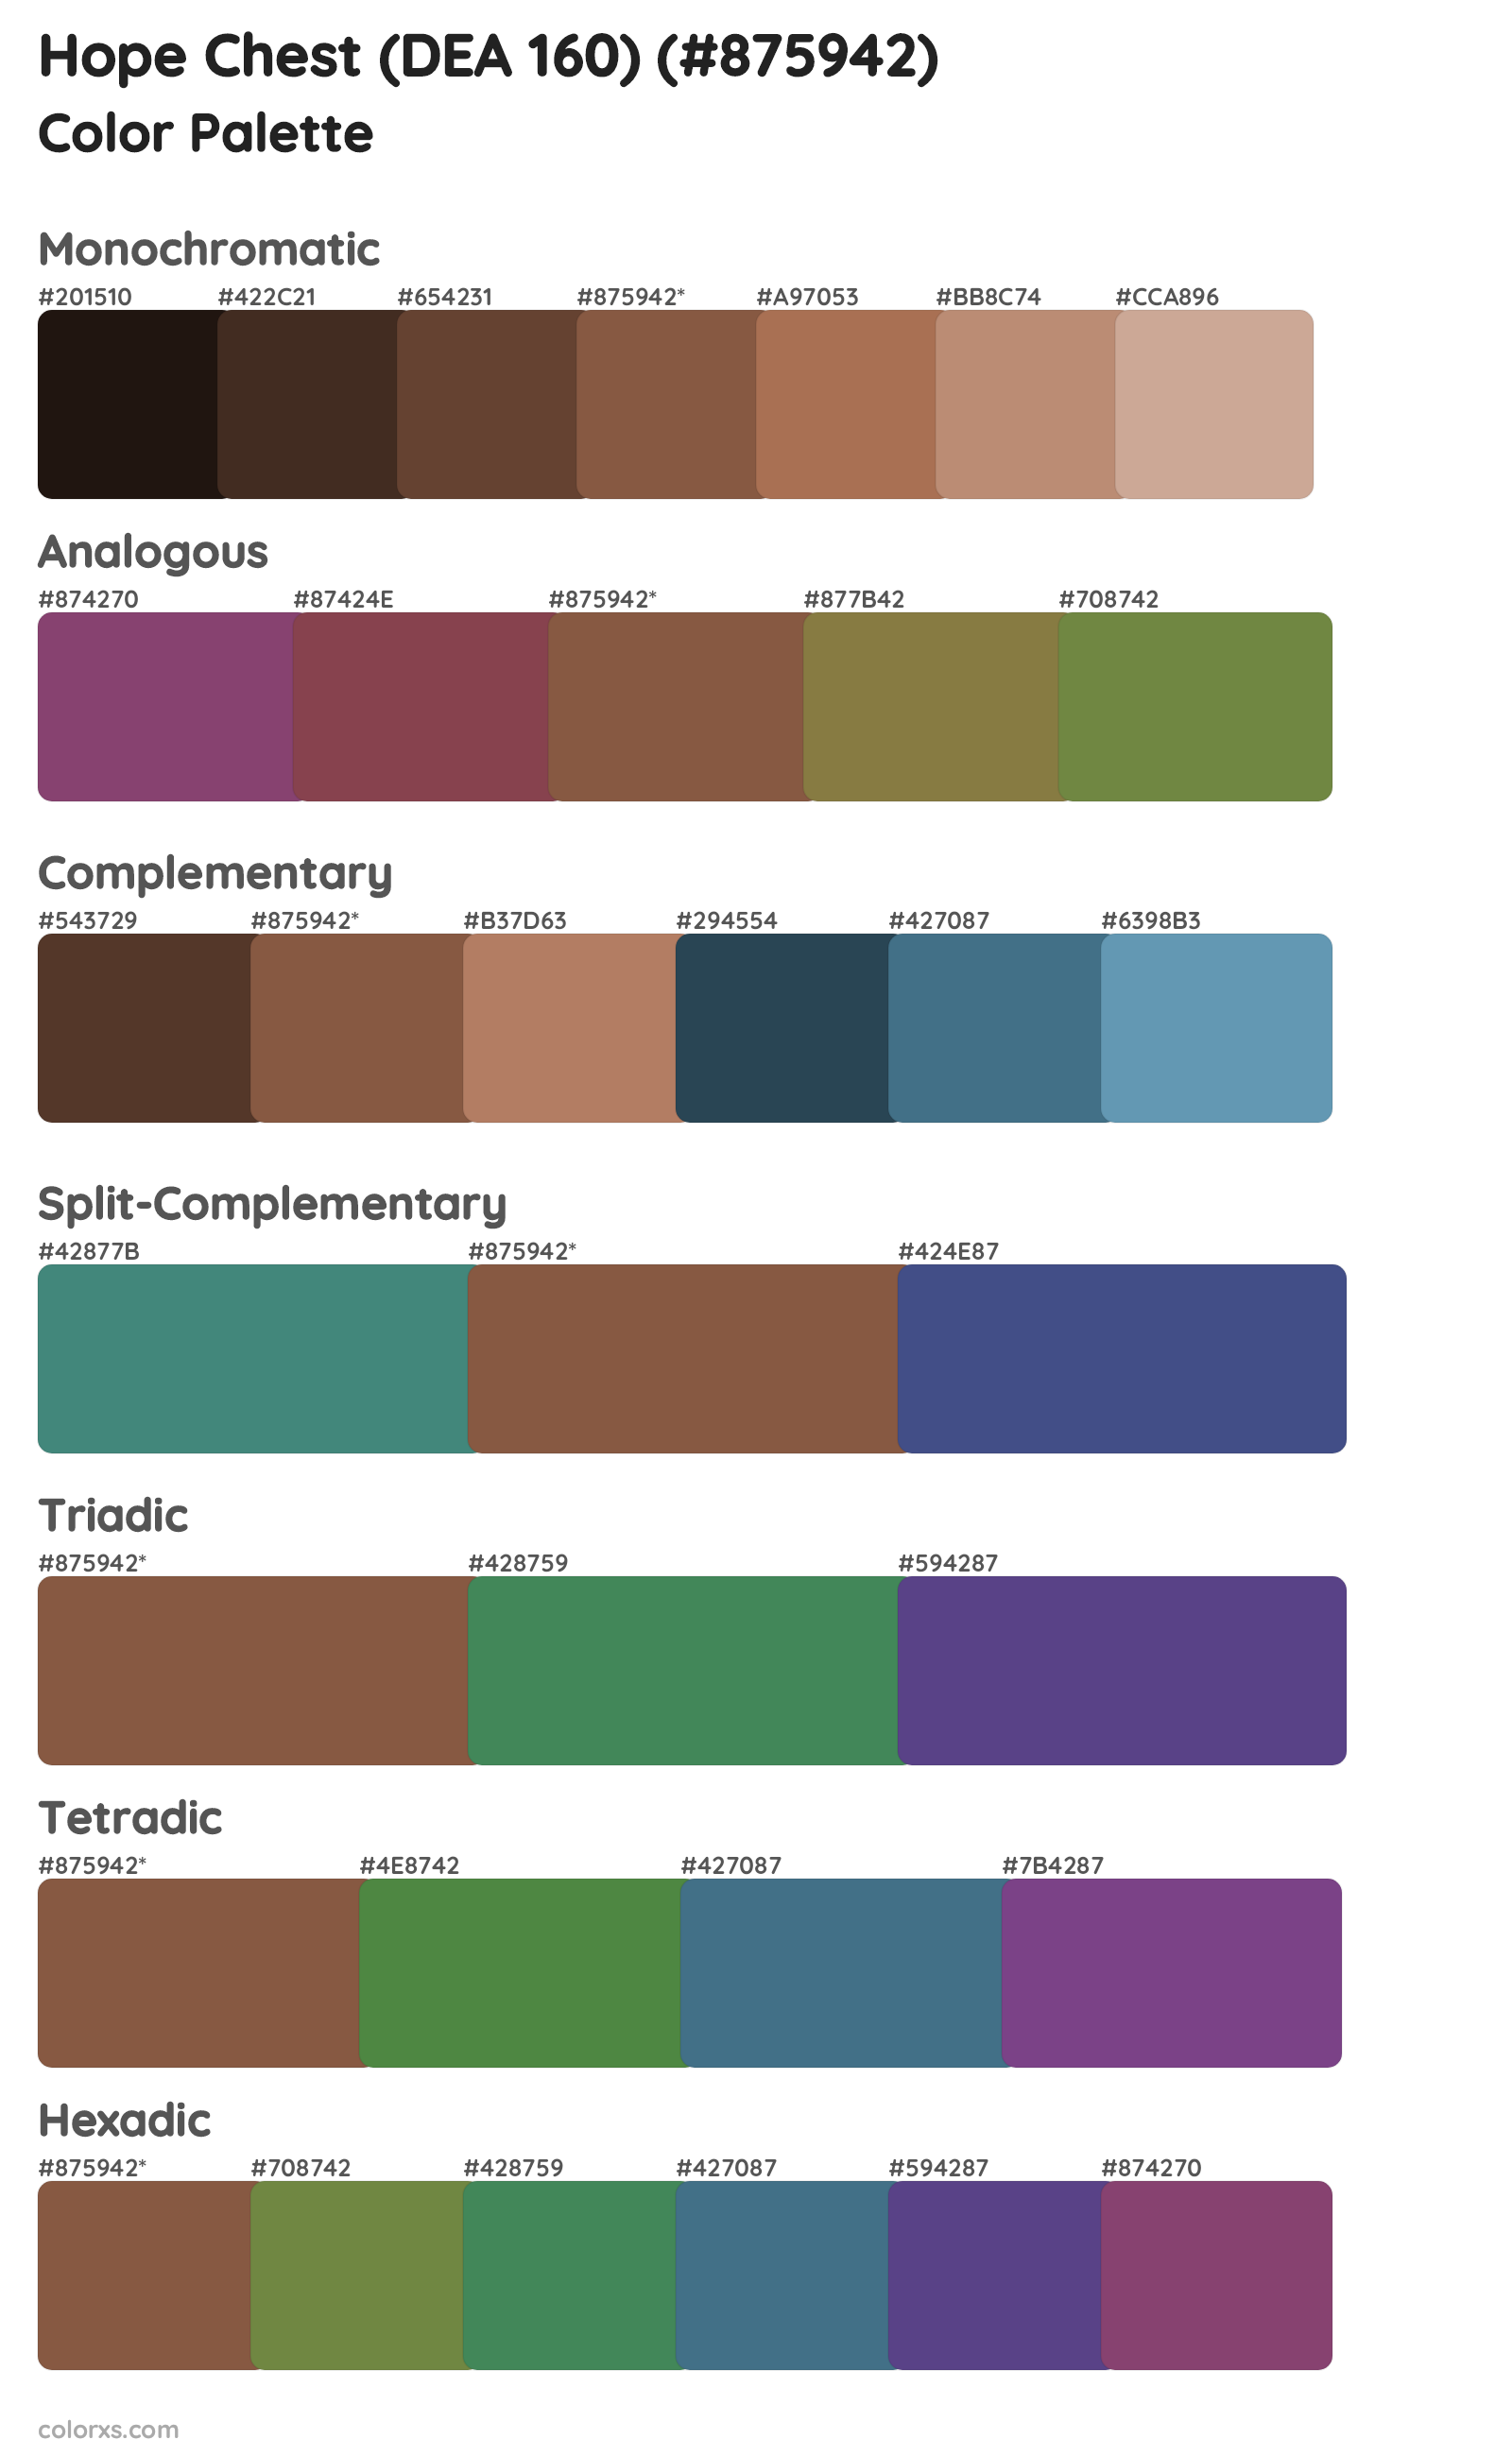 Hope Chest (DEA 160) Color Scheme Palettes